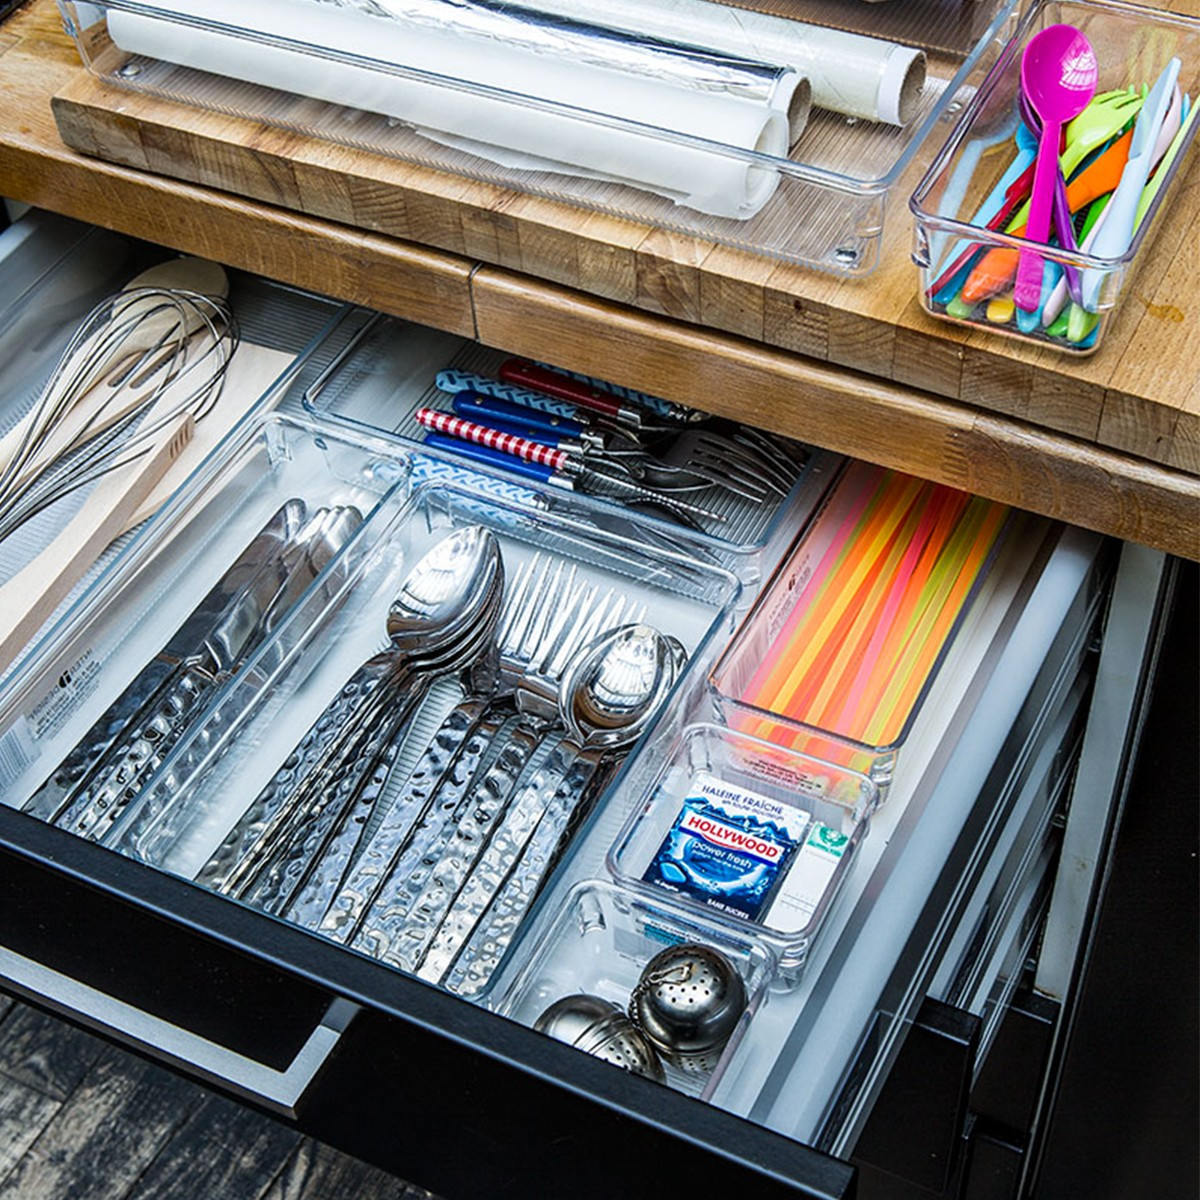 Organisation et rangements dans les tiroirs - Cuisines KOCHER